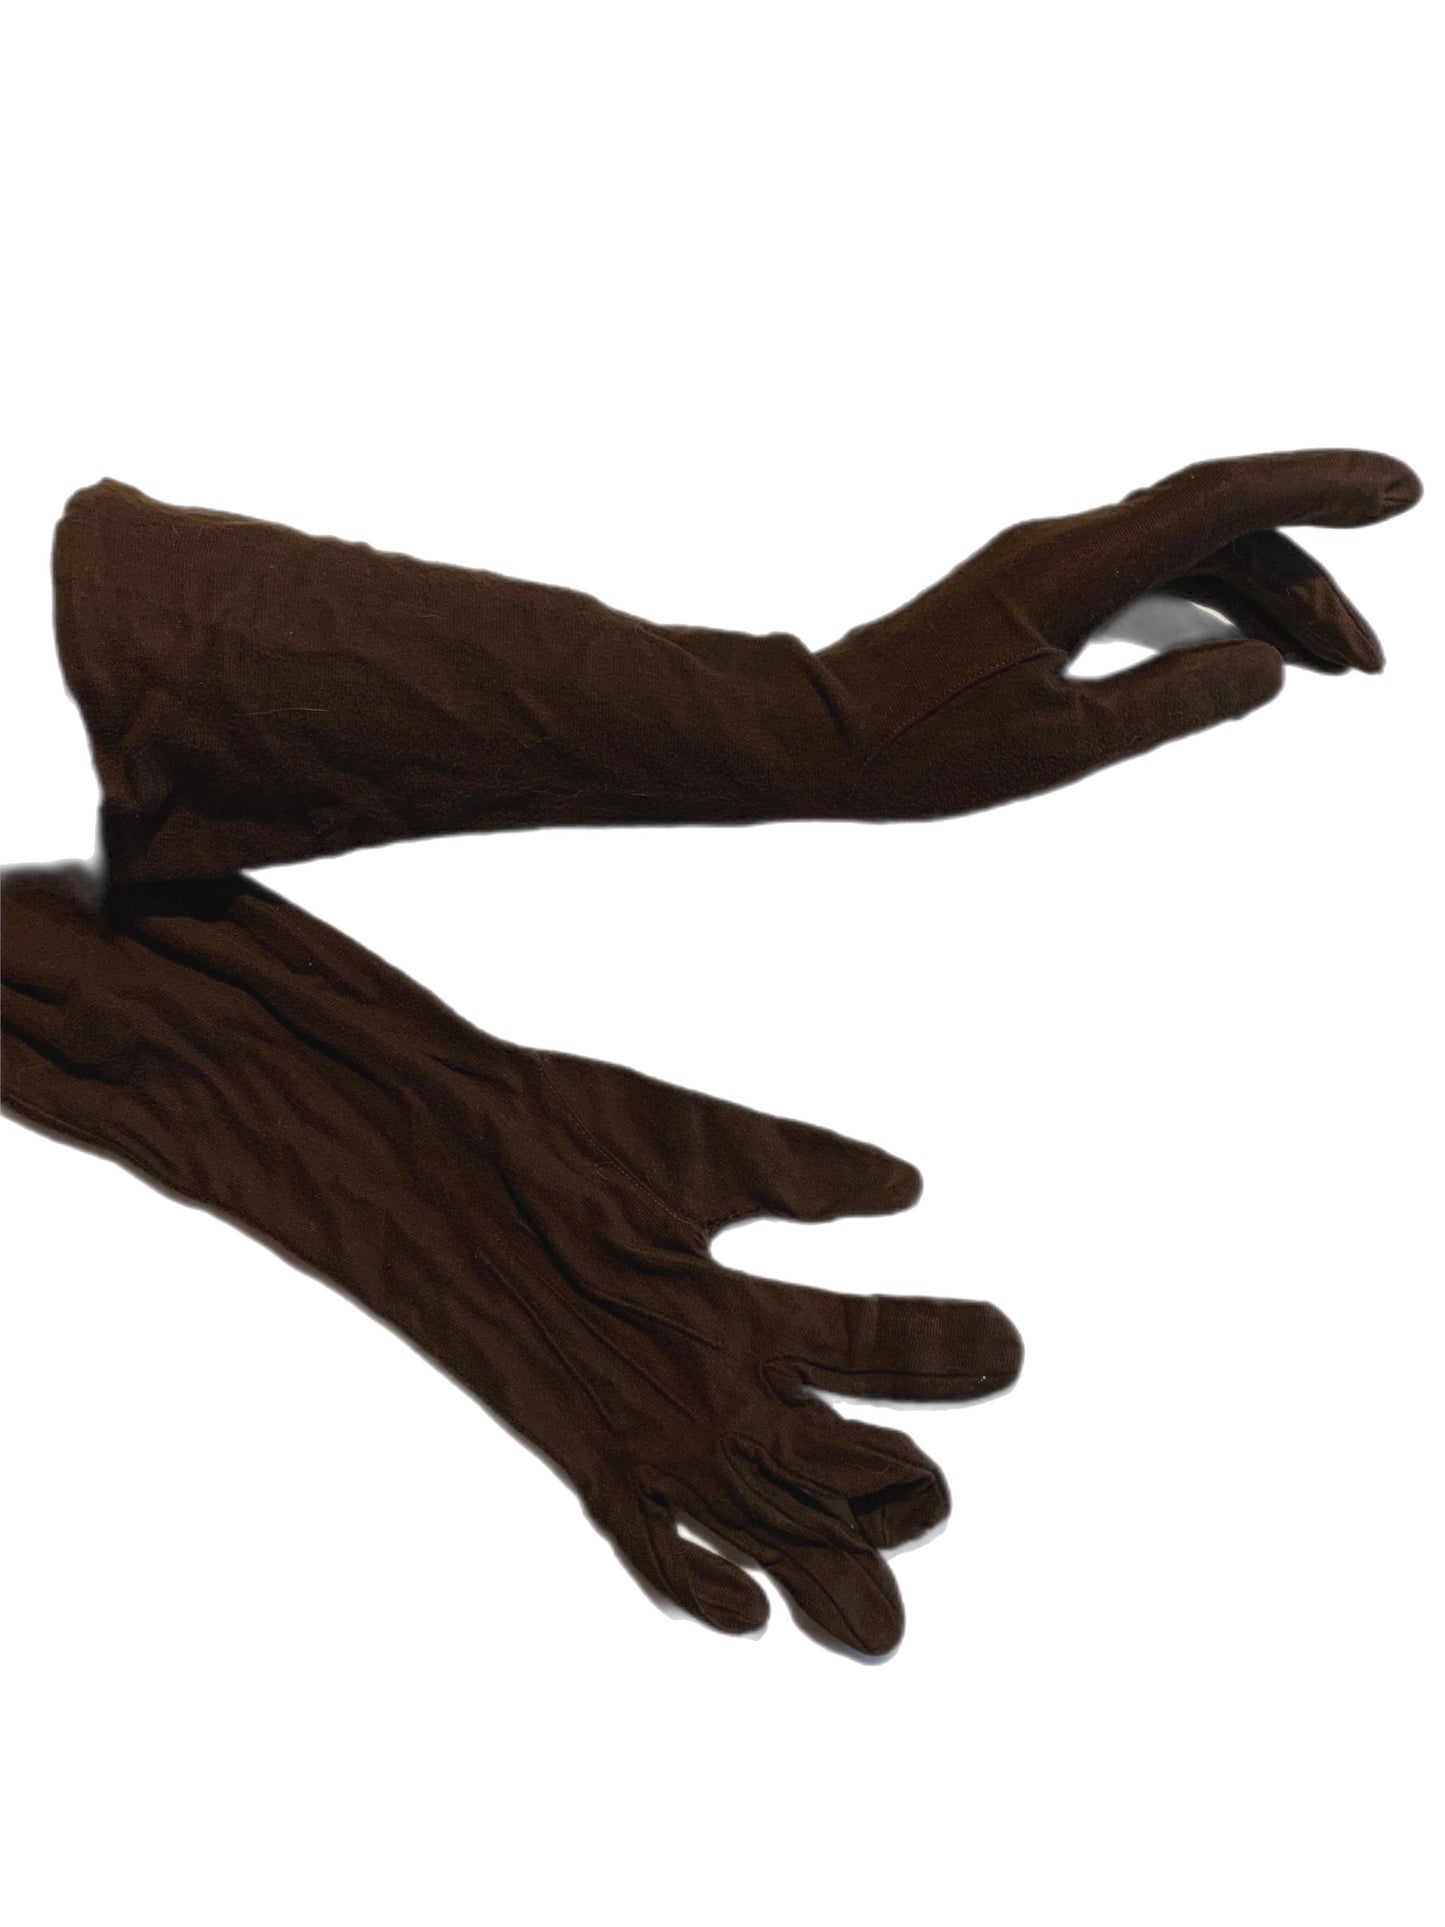 Cocoa Brown Mid Forearm Length Gloves circa 1960s